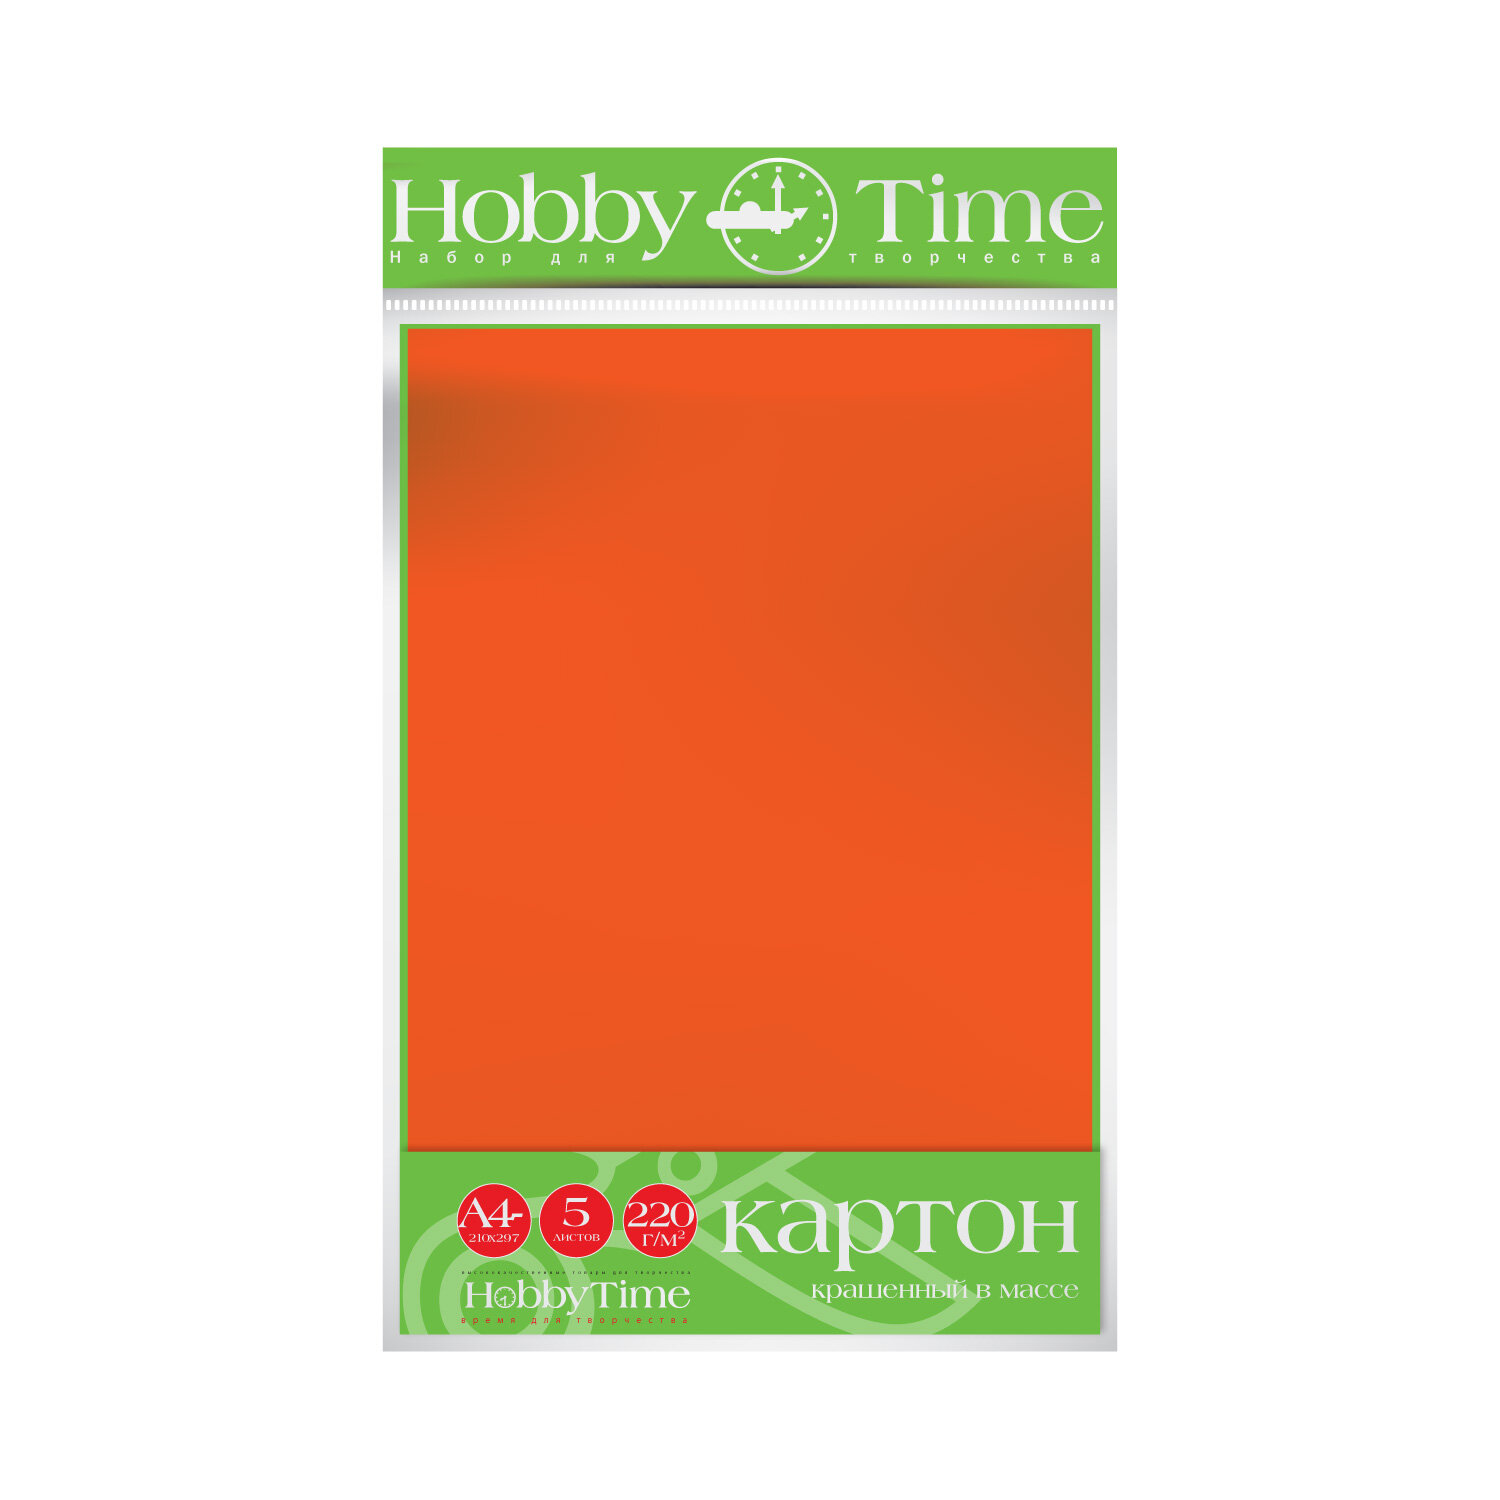 Набор цветного картона HOBBY TIME, А4 (222 х 352 мм), 5 листов, крашенный в массе, оранжевый, Арт : 2-063/03